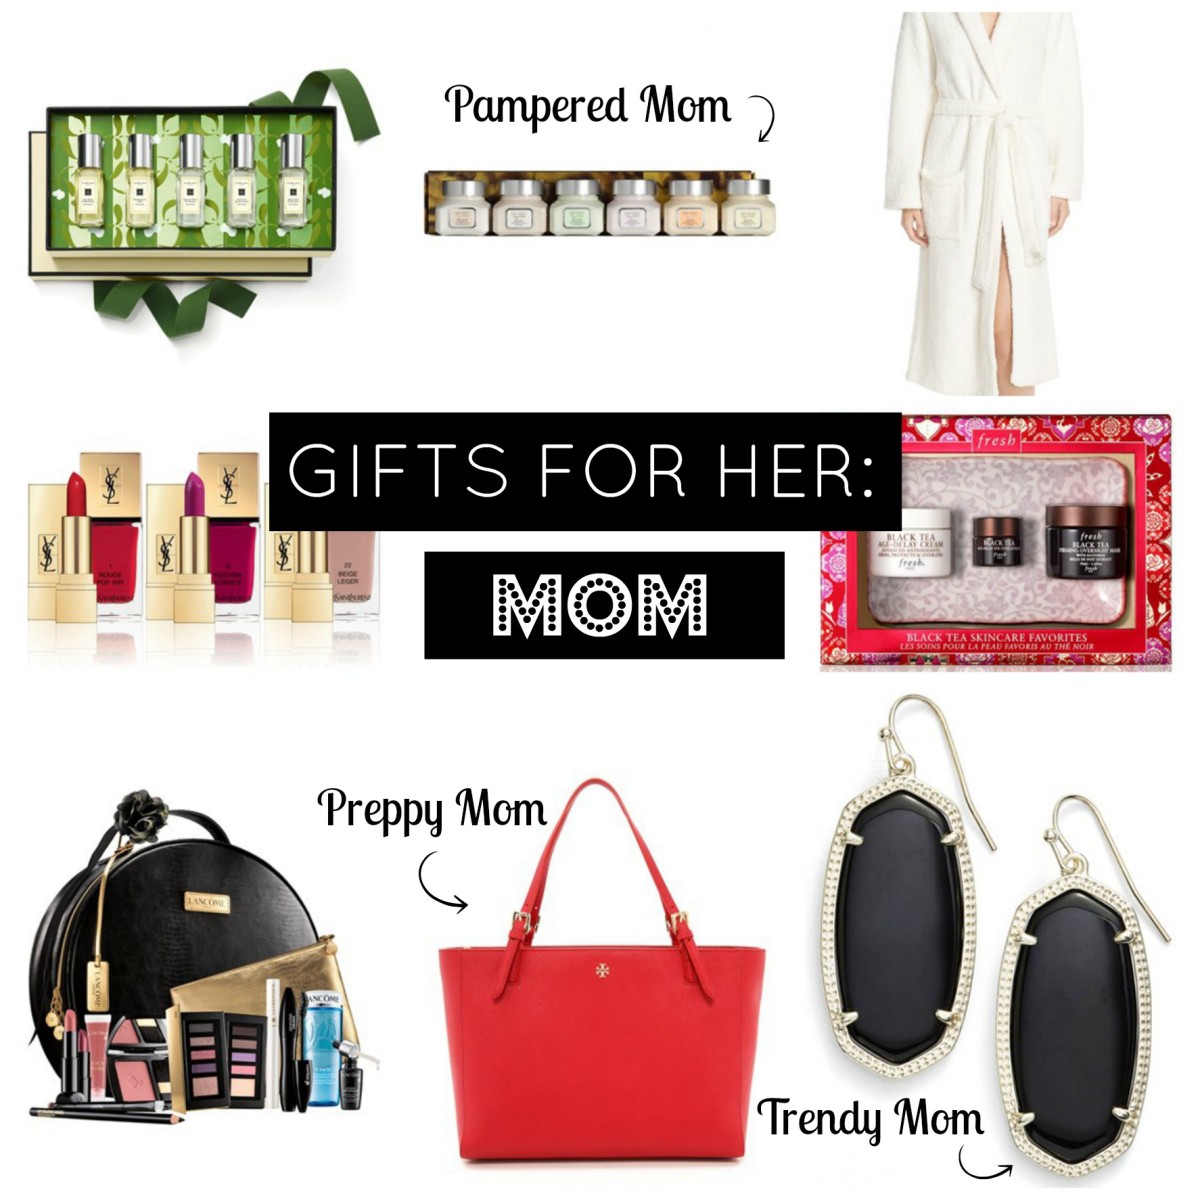 Good Gifts For Mom For Christmas Amazon : Amazon.com: Mom Gifts - Glass ...